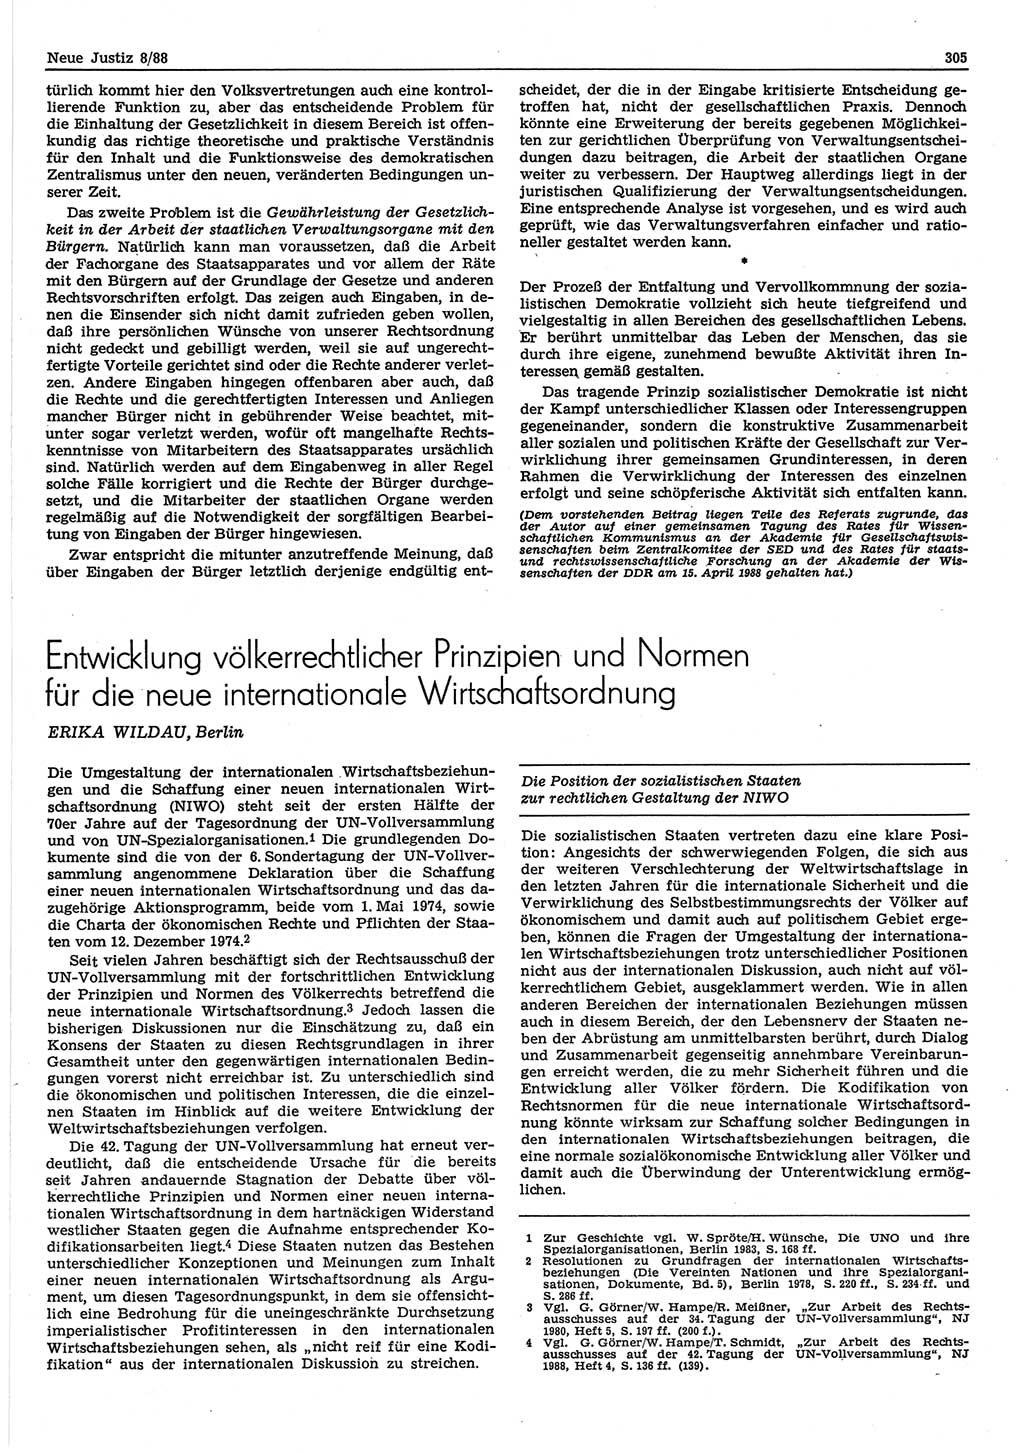 Neue Justiz (NJ), Zeitschrift für sozialistisches Recht und Gesetzlichkeit [Deutsche Demokratische Republik (DDR)], 42. Jahrgang 1988, Seite 305 (NJ DDR 1988, S. 305)